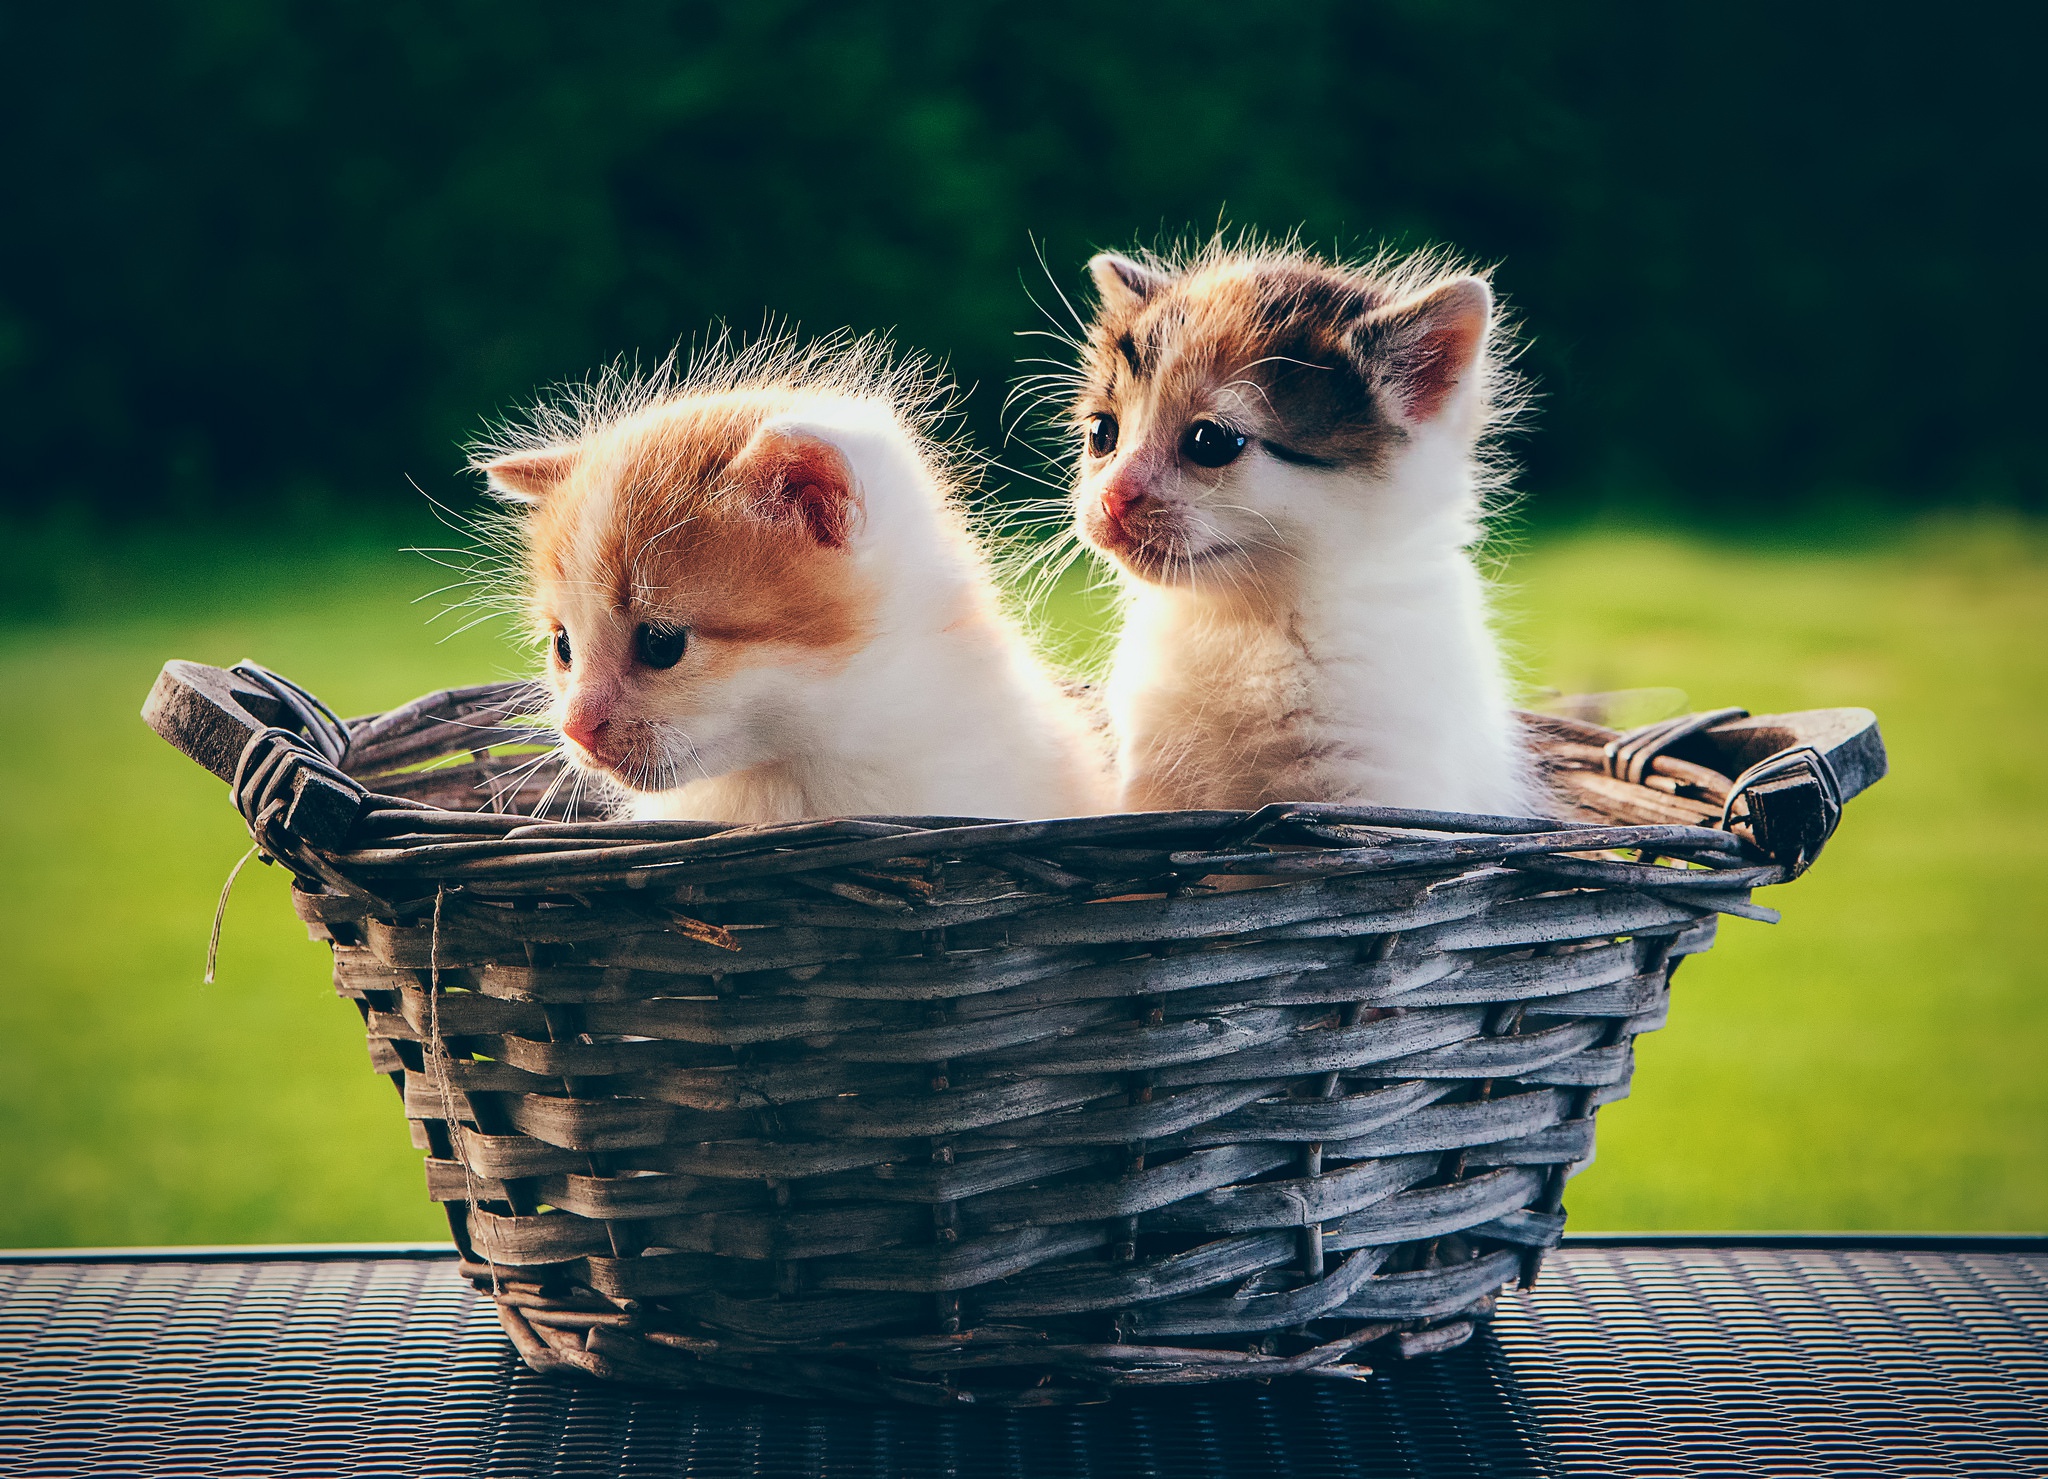 Free download wallpaper Cats, Cat, Kitten, Animal, Basket, Baby Animal on your PC desktop